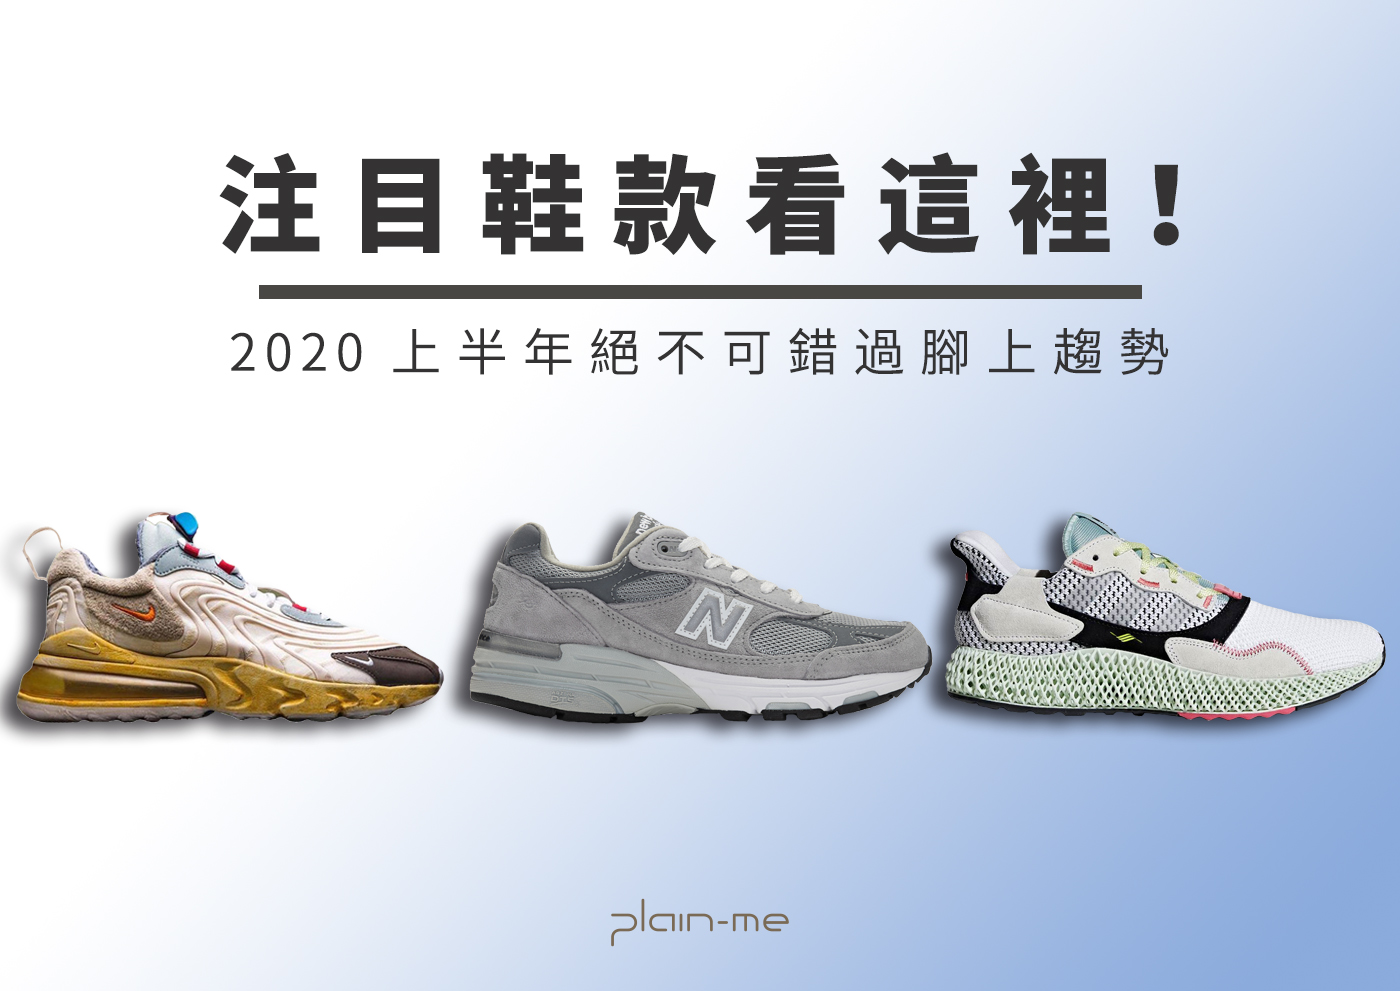 籃球鞋,球鞋趨勢,2020球鞋,2020鞋款,鞋款,球鞋,Adidas Ultra 4D,Travis Scott x Nike Air Max 270 React,AURALEE New Balance COMP 100,New Balance M992